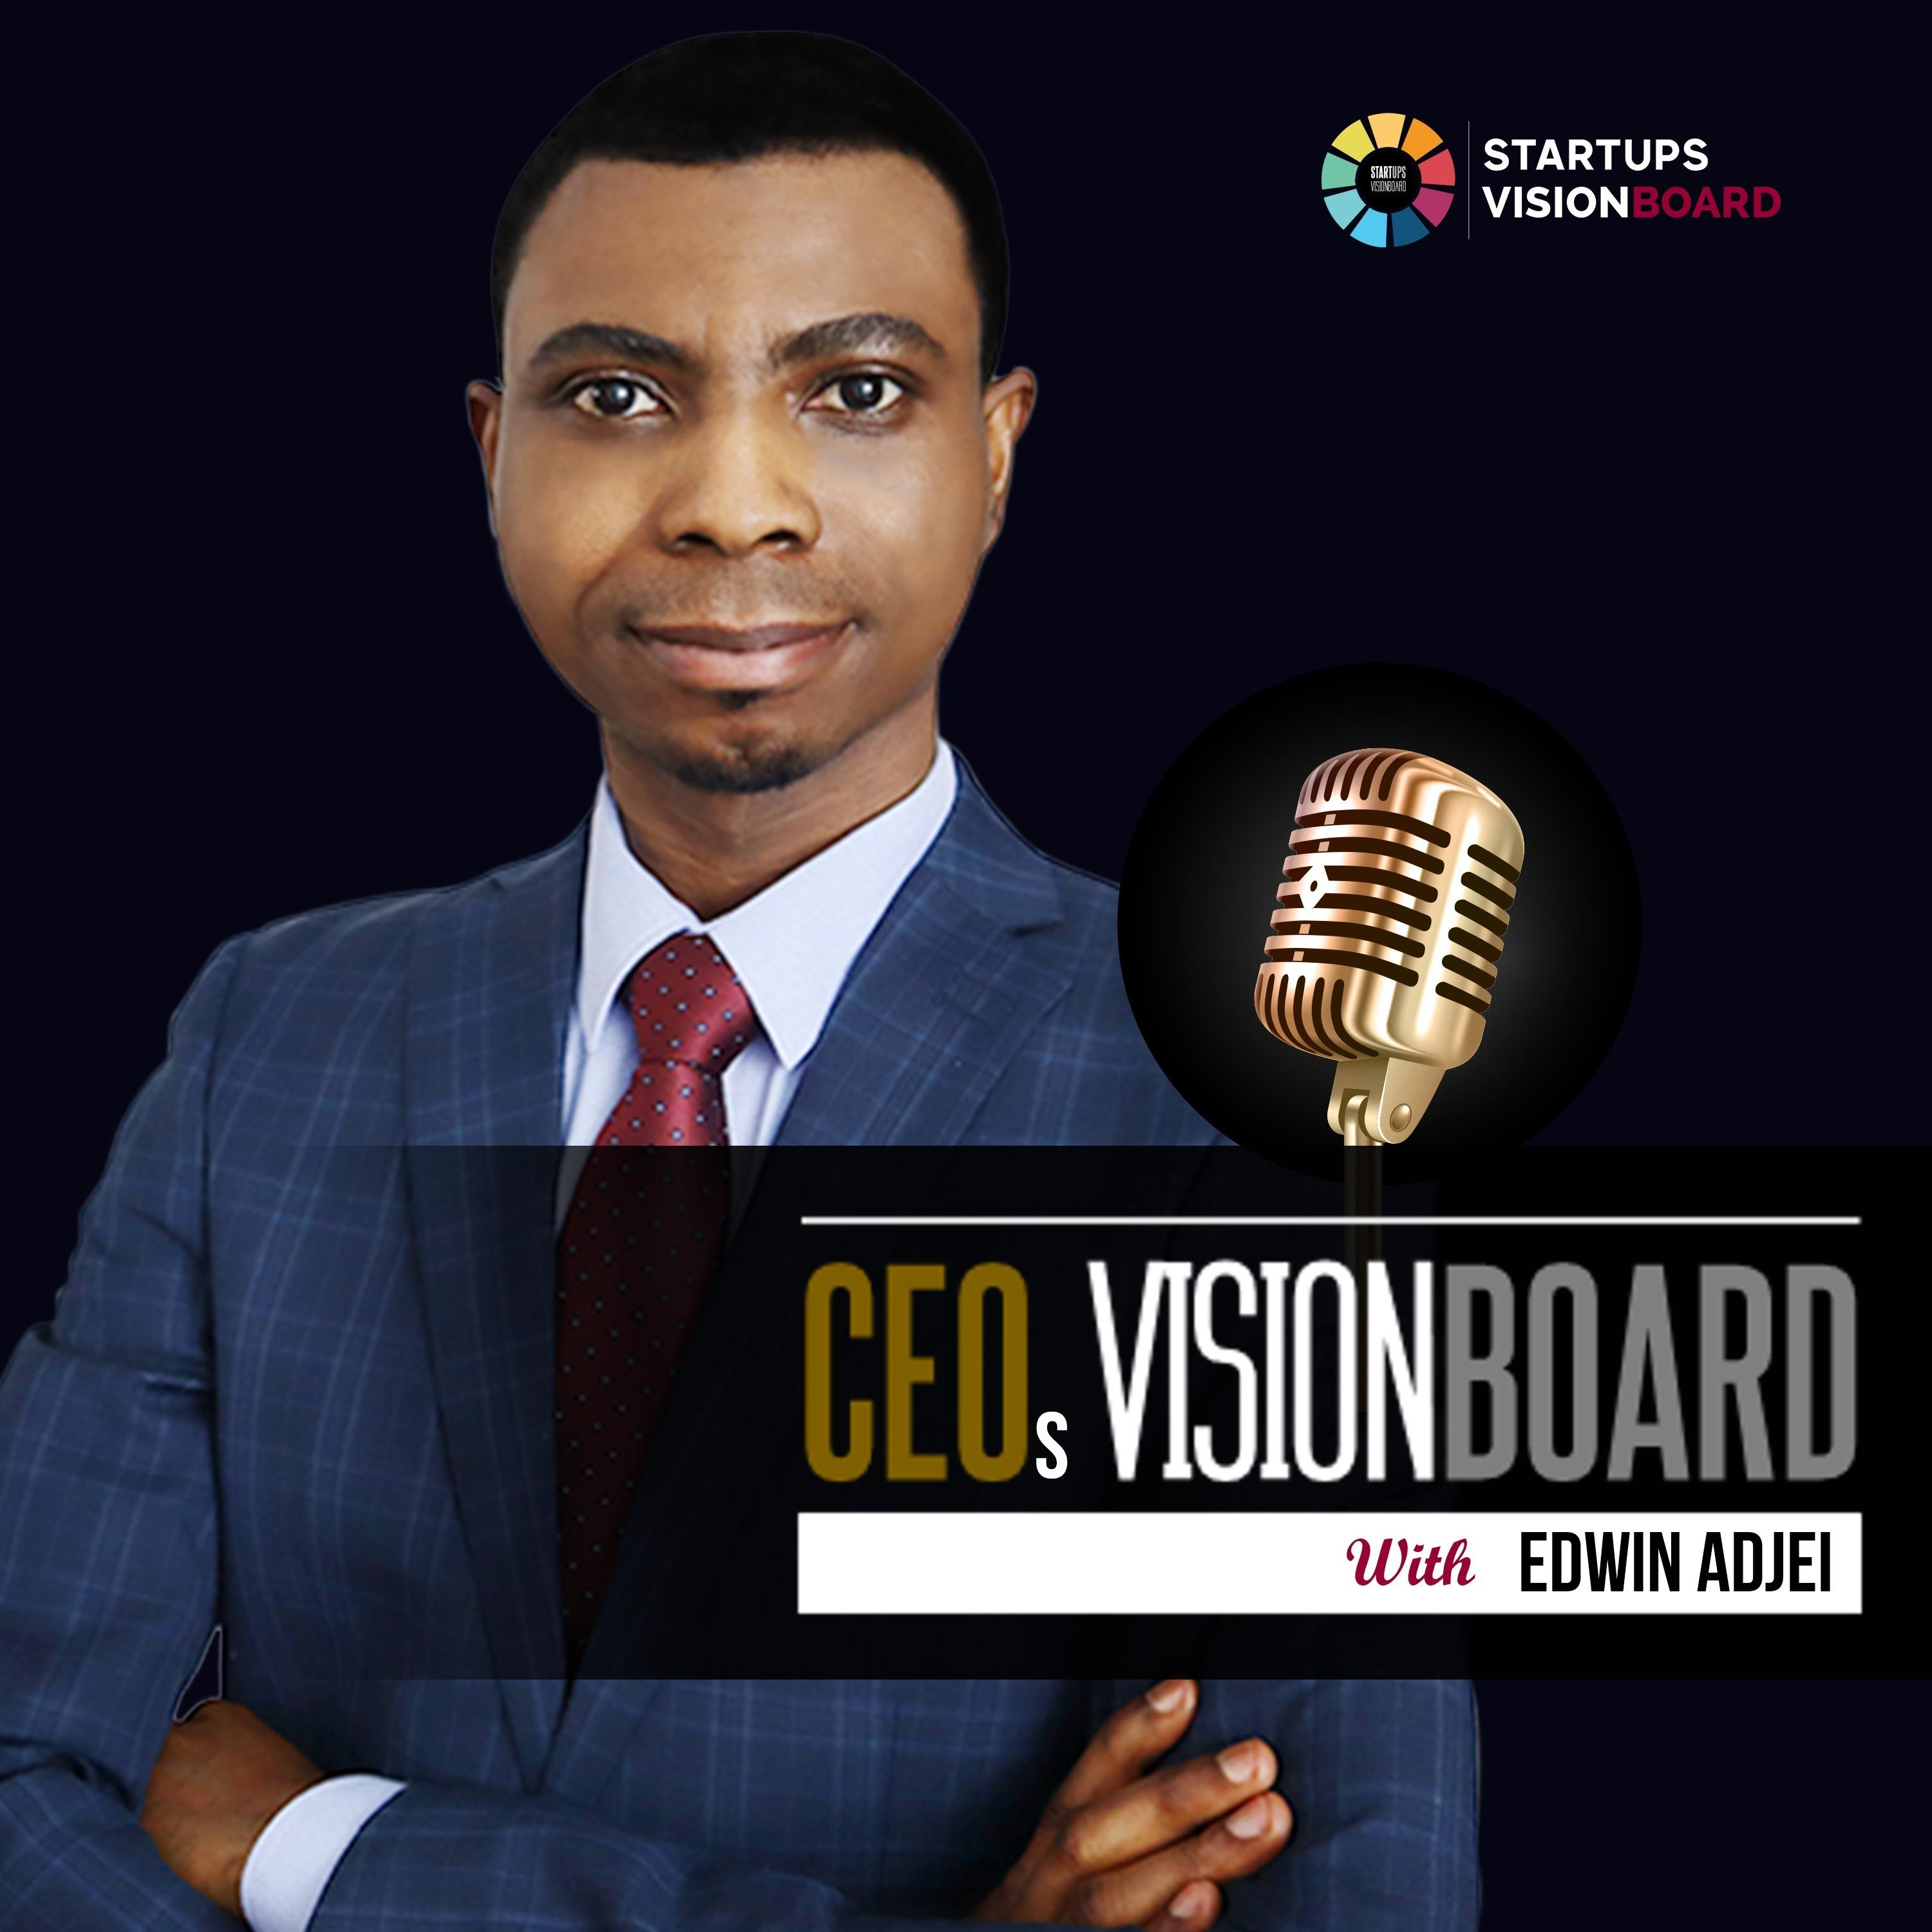 CEOs VisionBoard